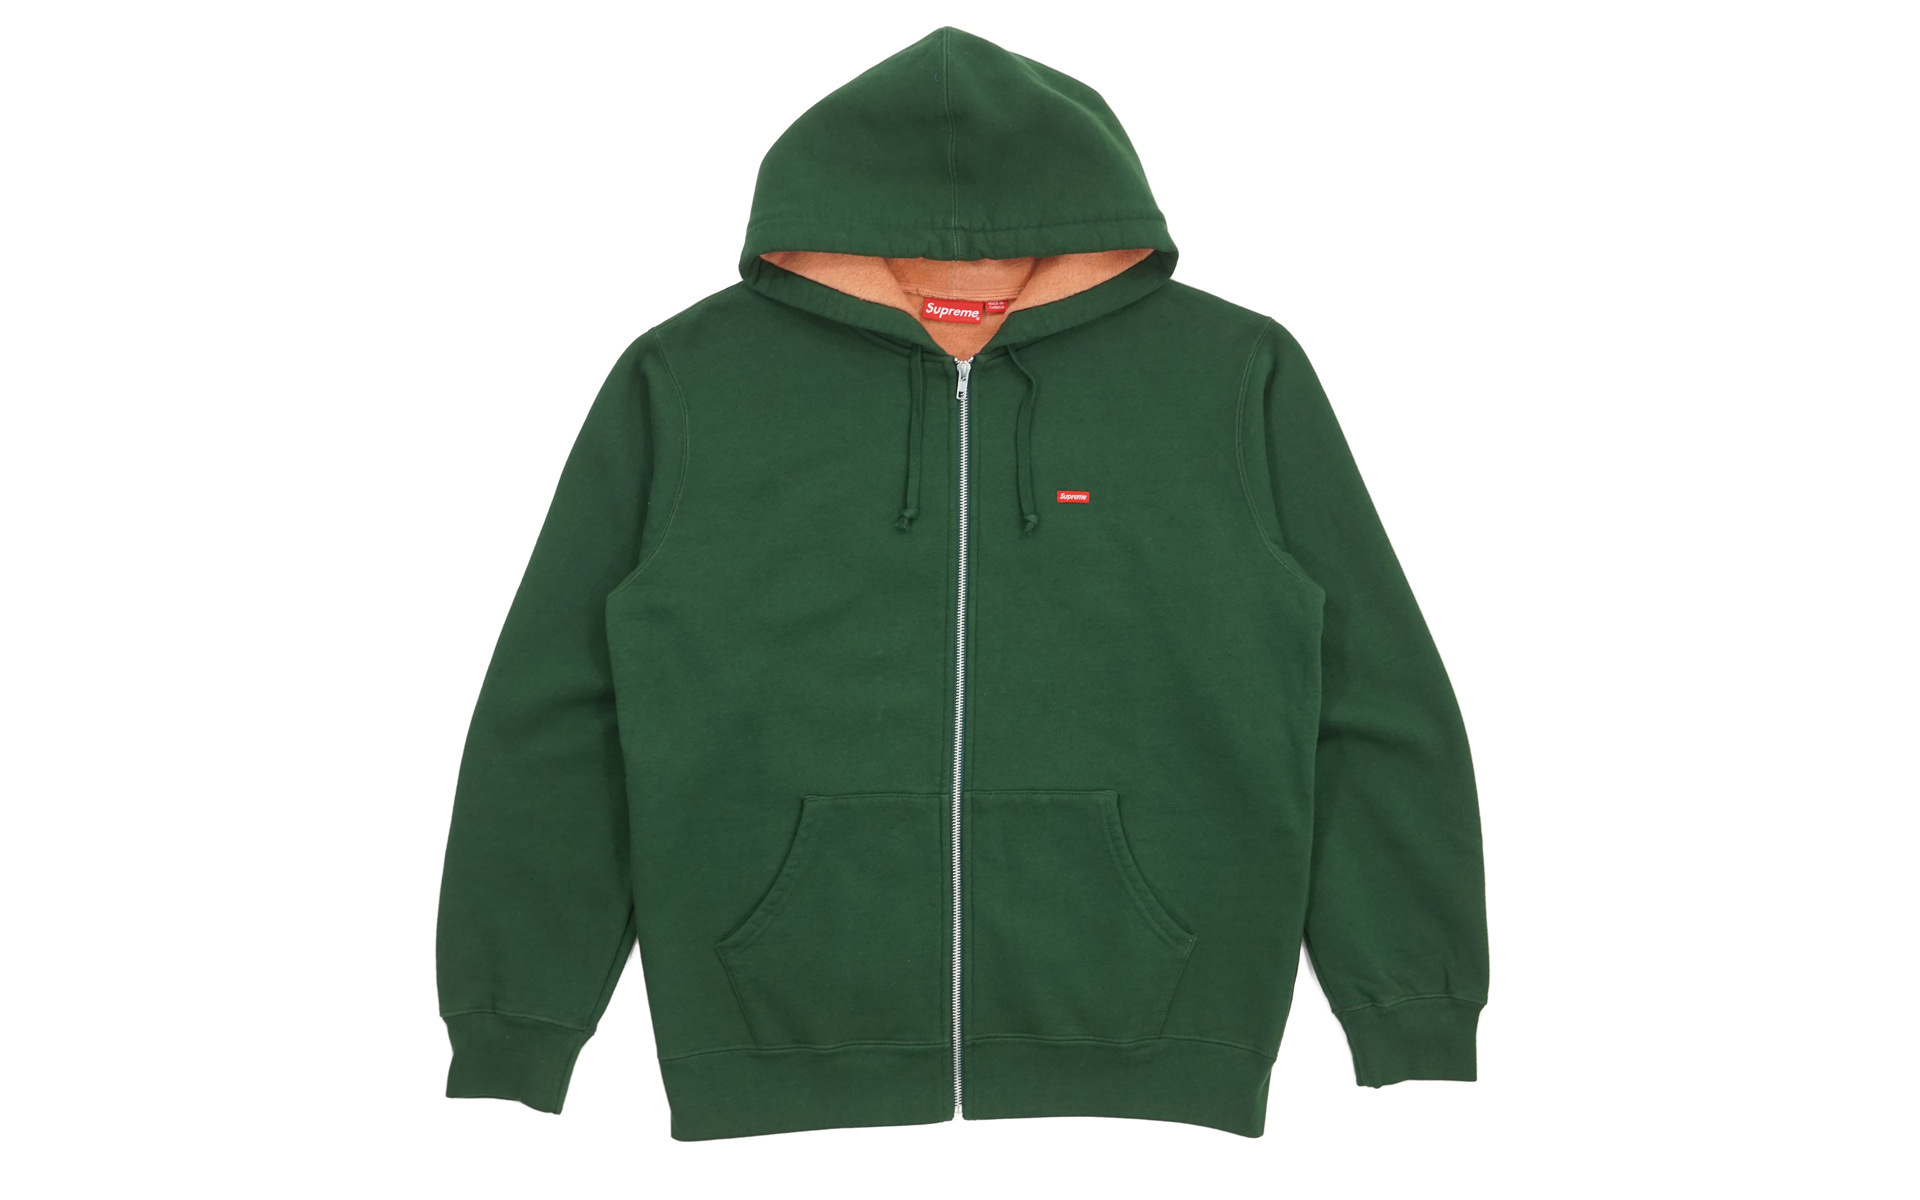 Supreme Contrast Zip Up Hooded Sweatshirt Dark Green Men's - SS18 - US